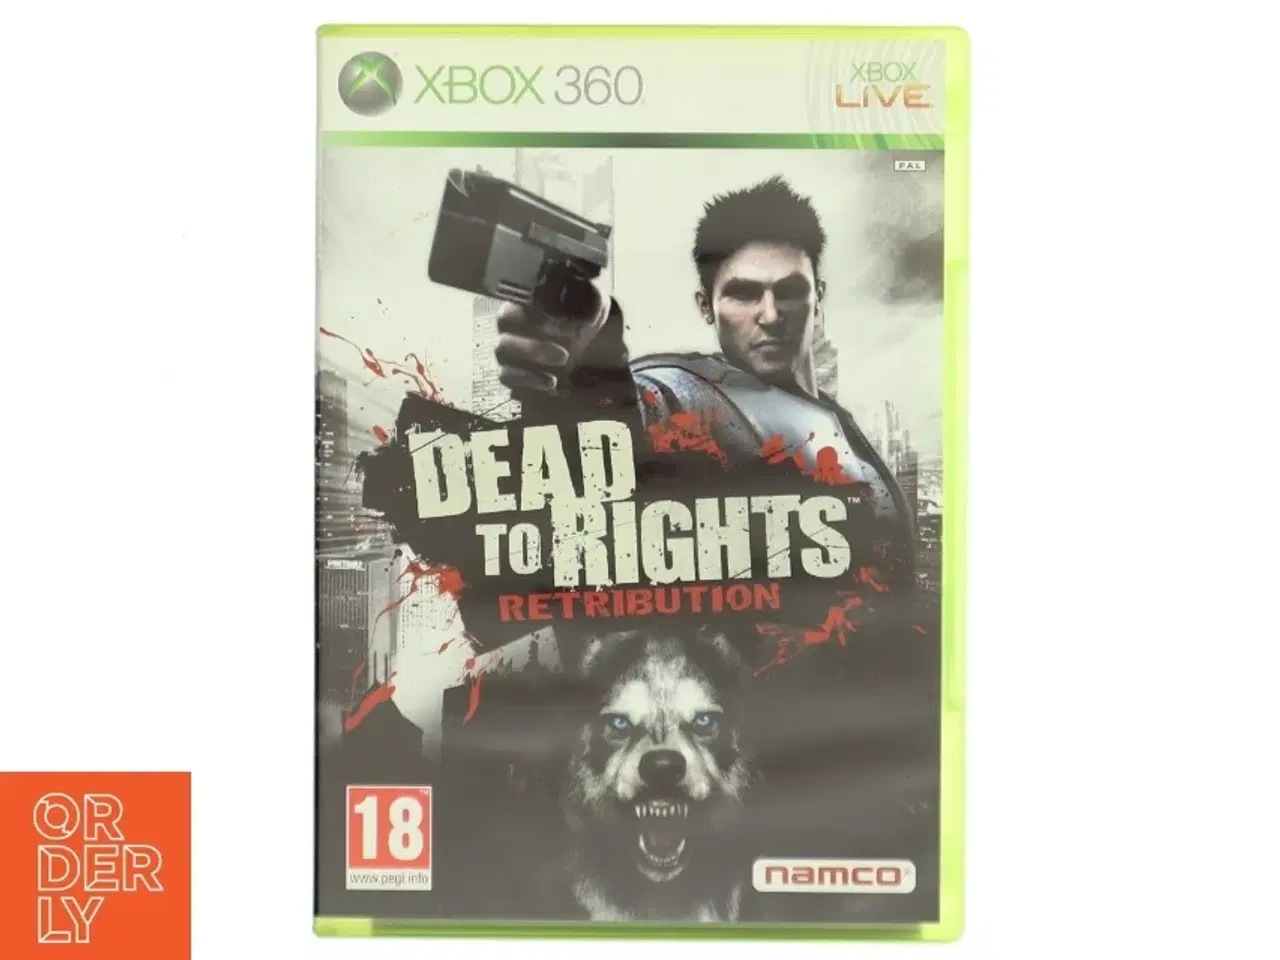 Billede 1 - Dead to Rights: Retribution Xbox 360 spil fra Namco